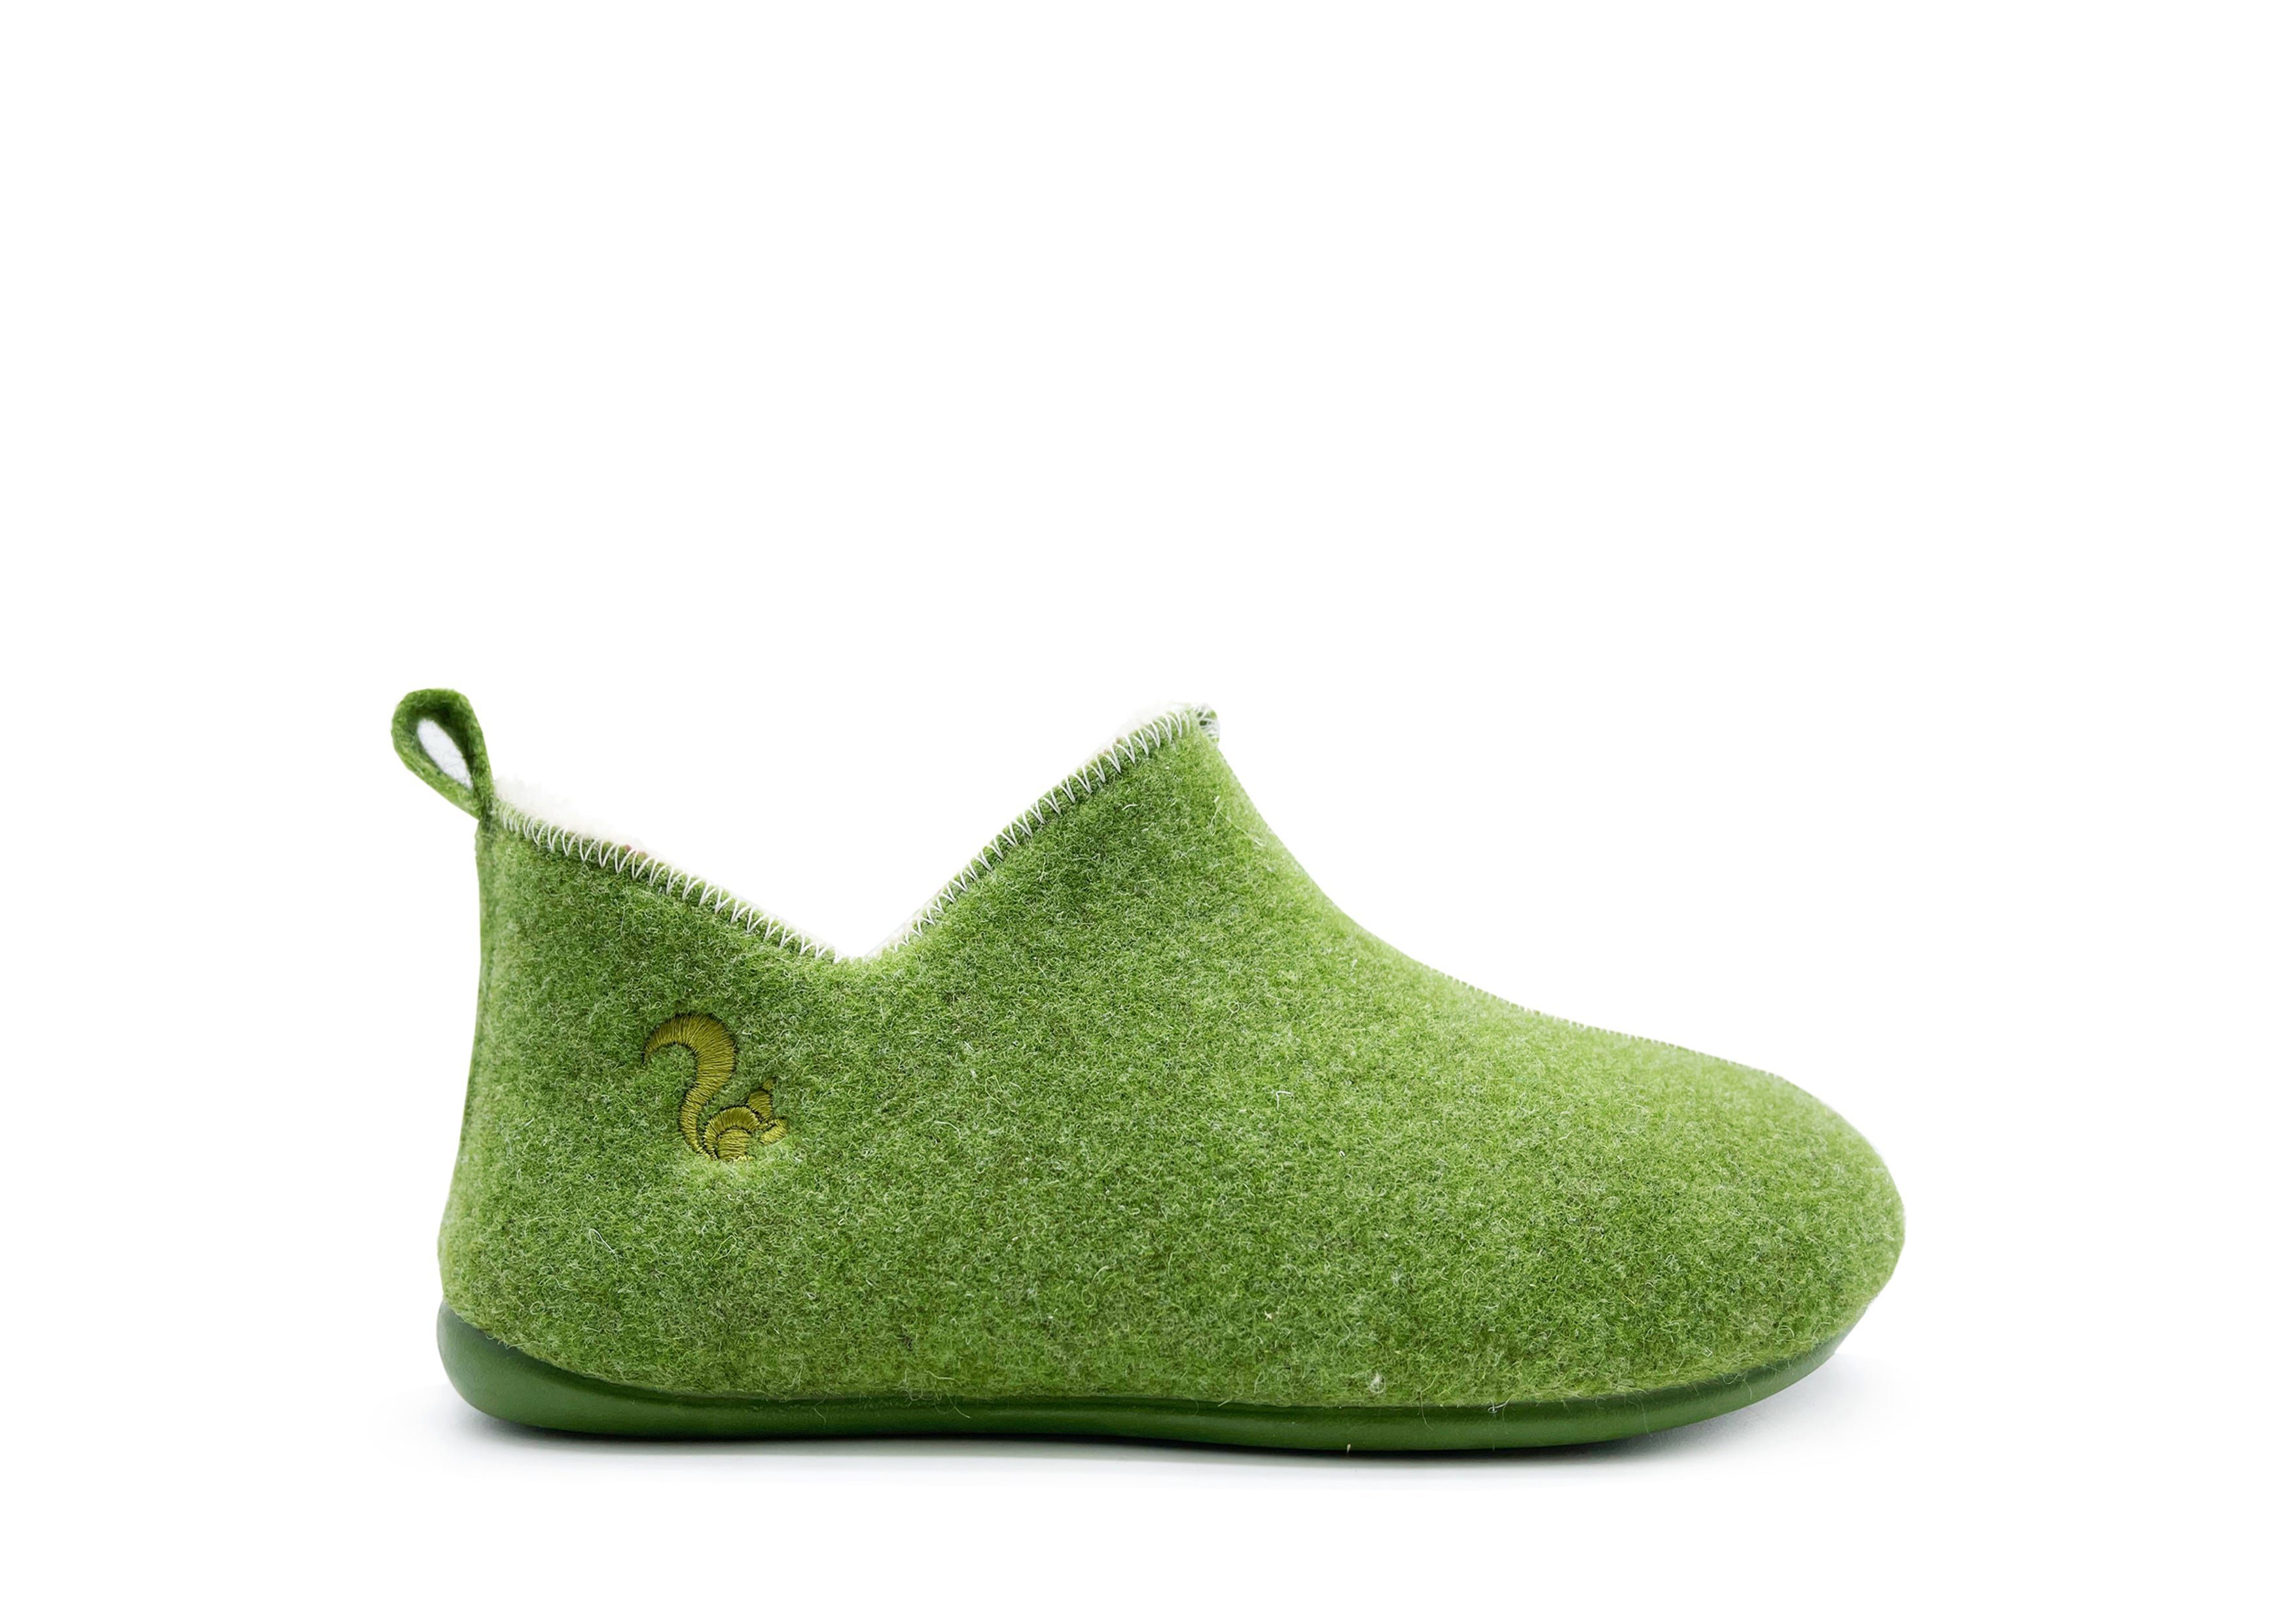 Wool thies Kids Slipper Slipper Boot Green 1856 ®